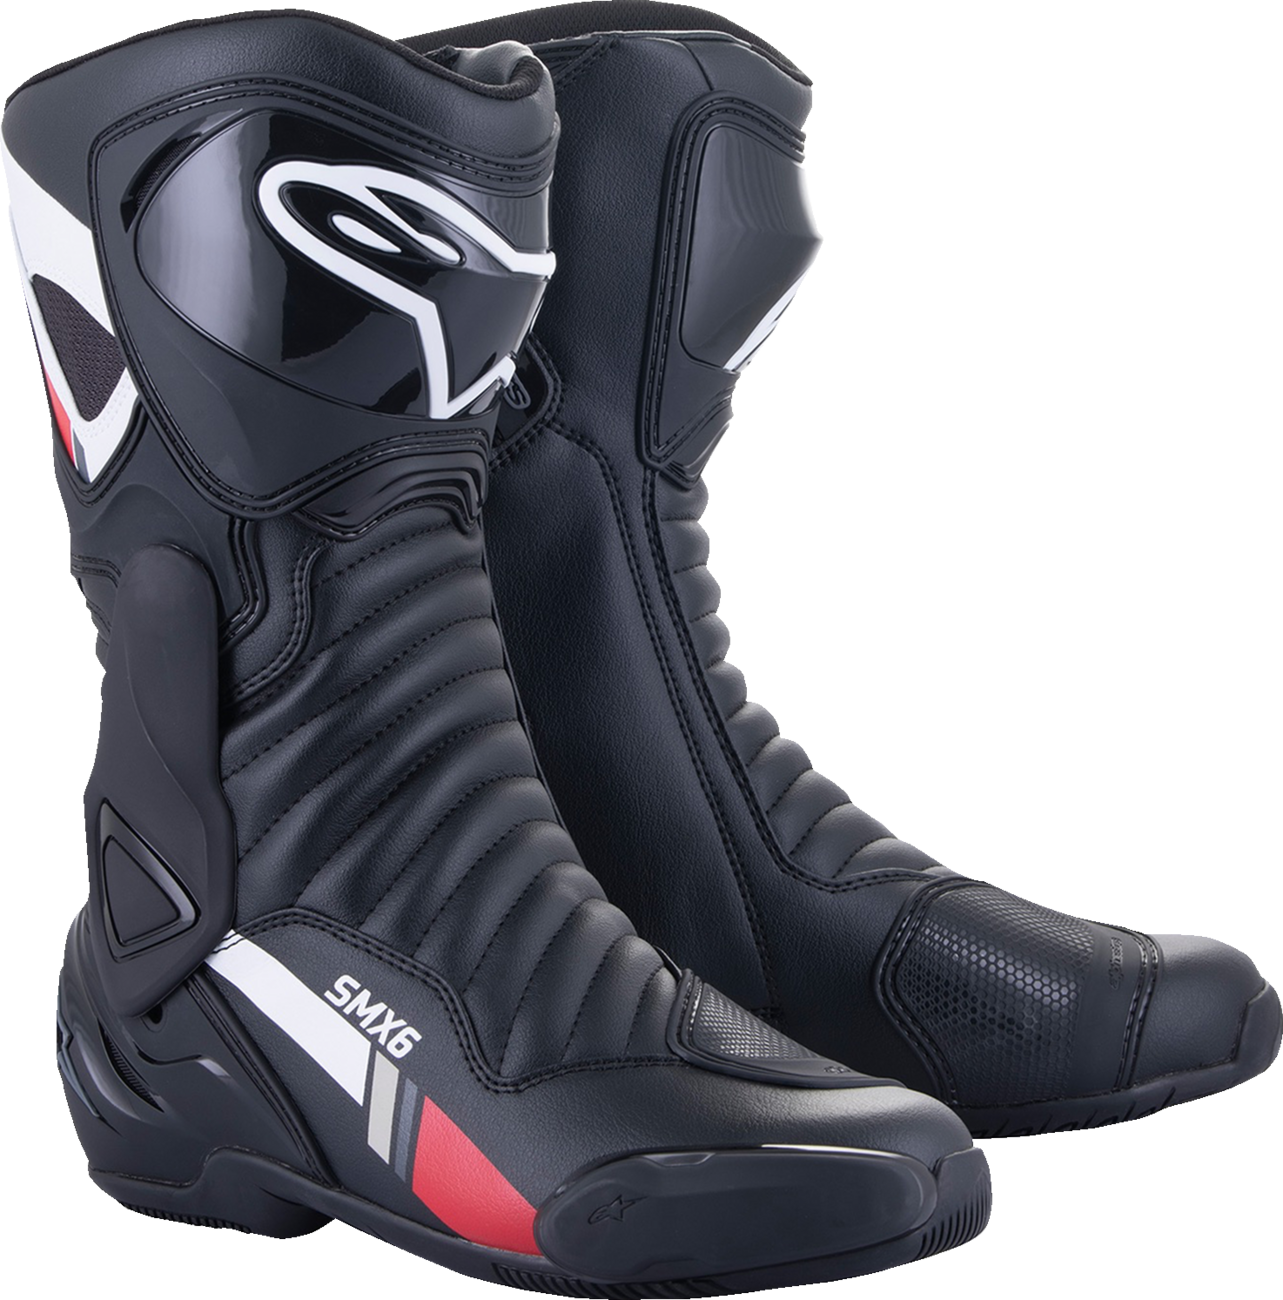 ALPINESTARS SMX-6 v2 Boots - Black/White/Gray - US 12 / EU 47 2223017-153-47